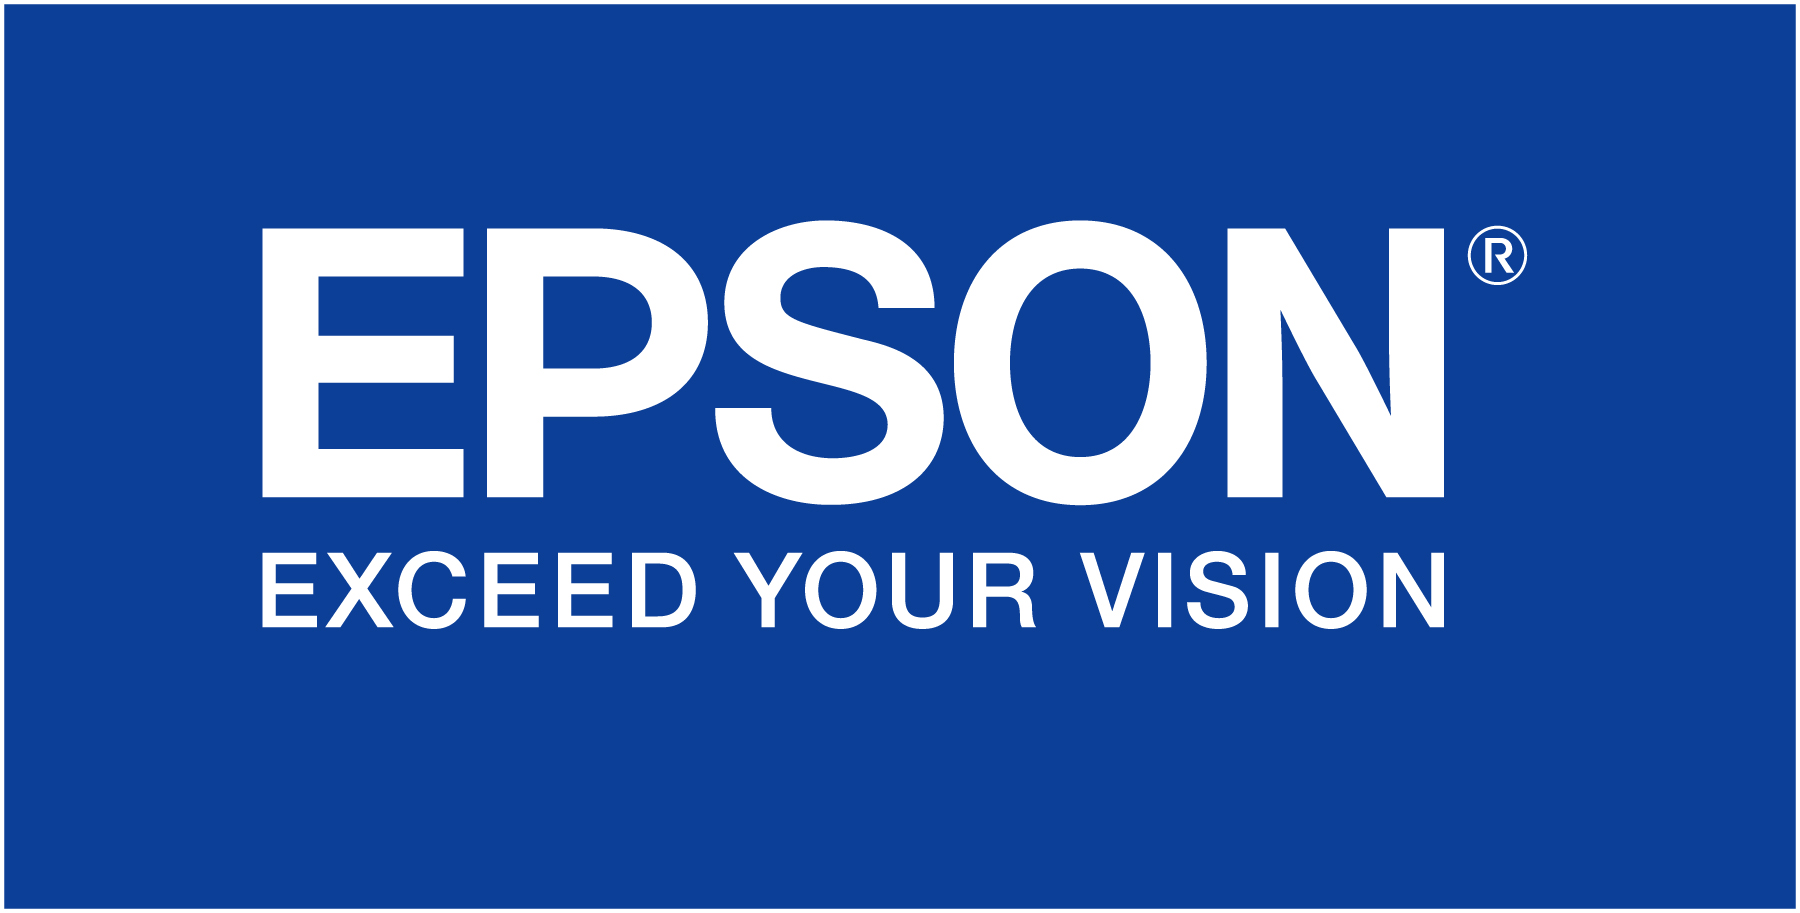 С новыми сканерами Epson легко решать сложные бизнес-задачи